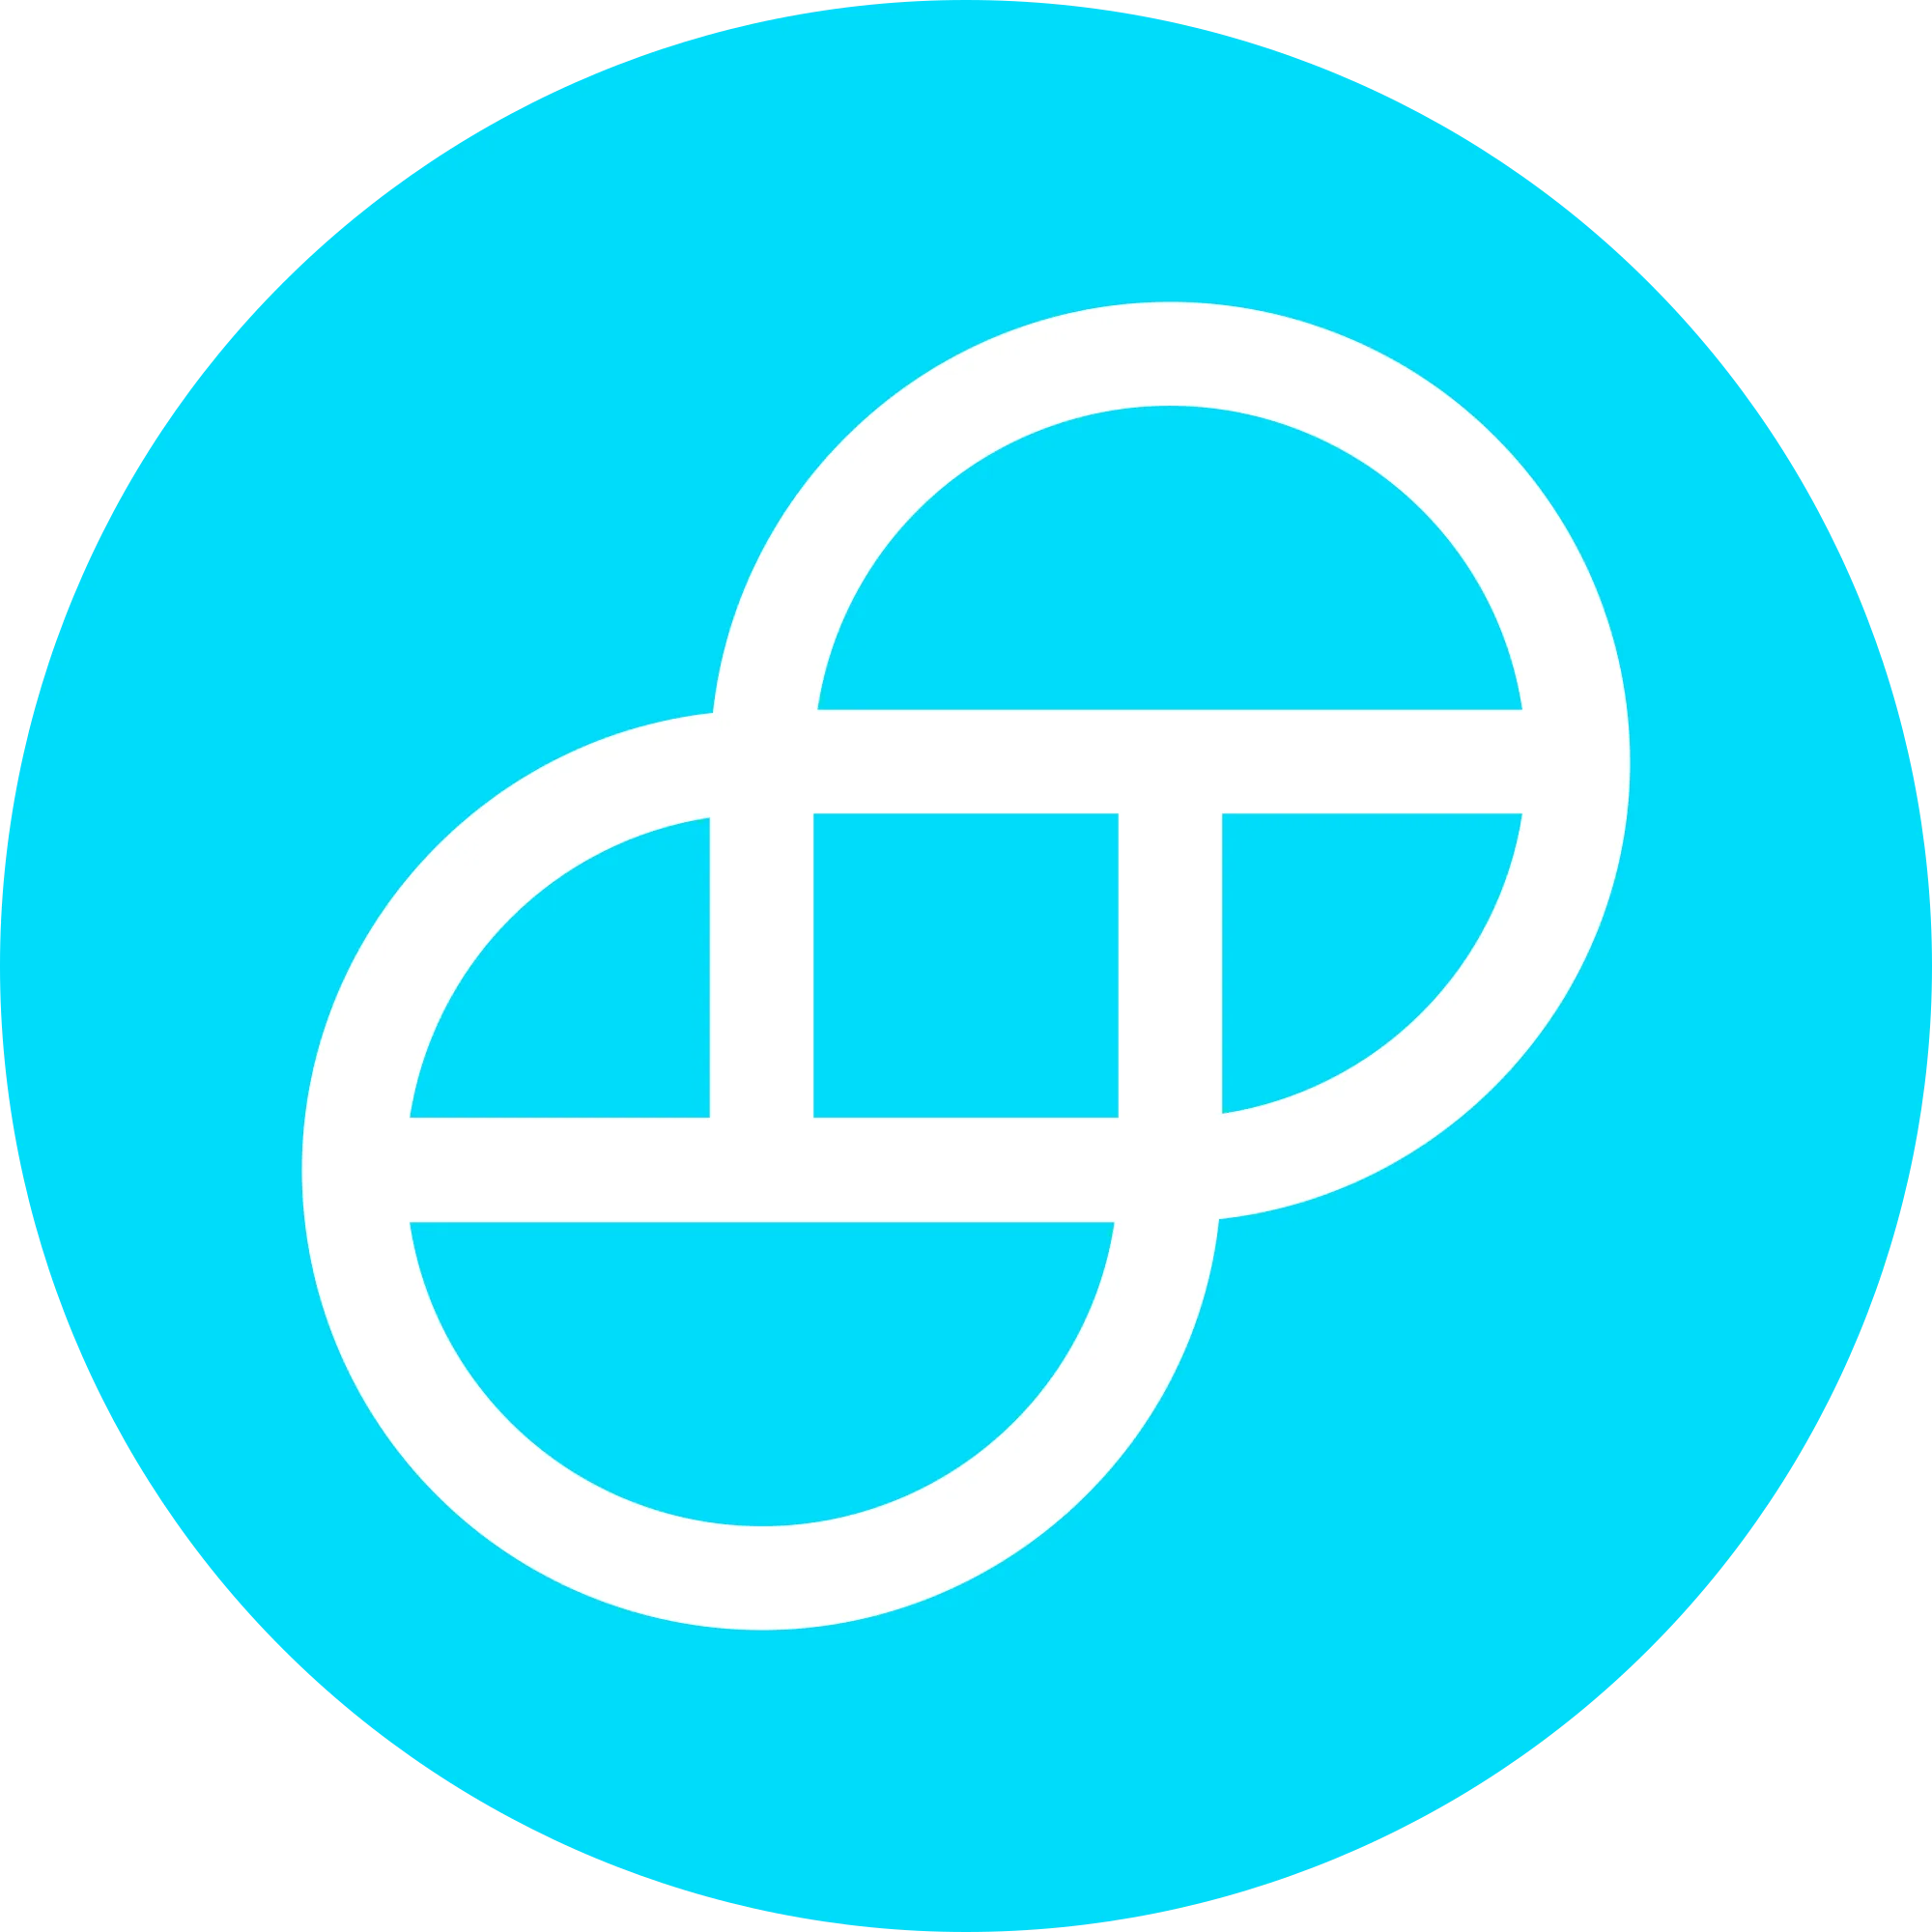 Gemini Dollar logo in png format